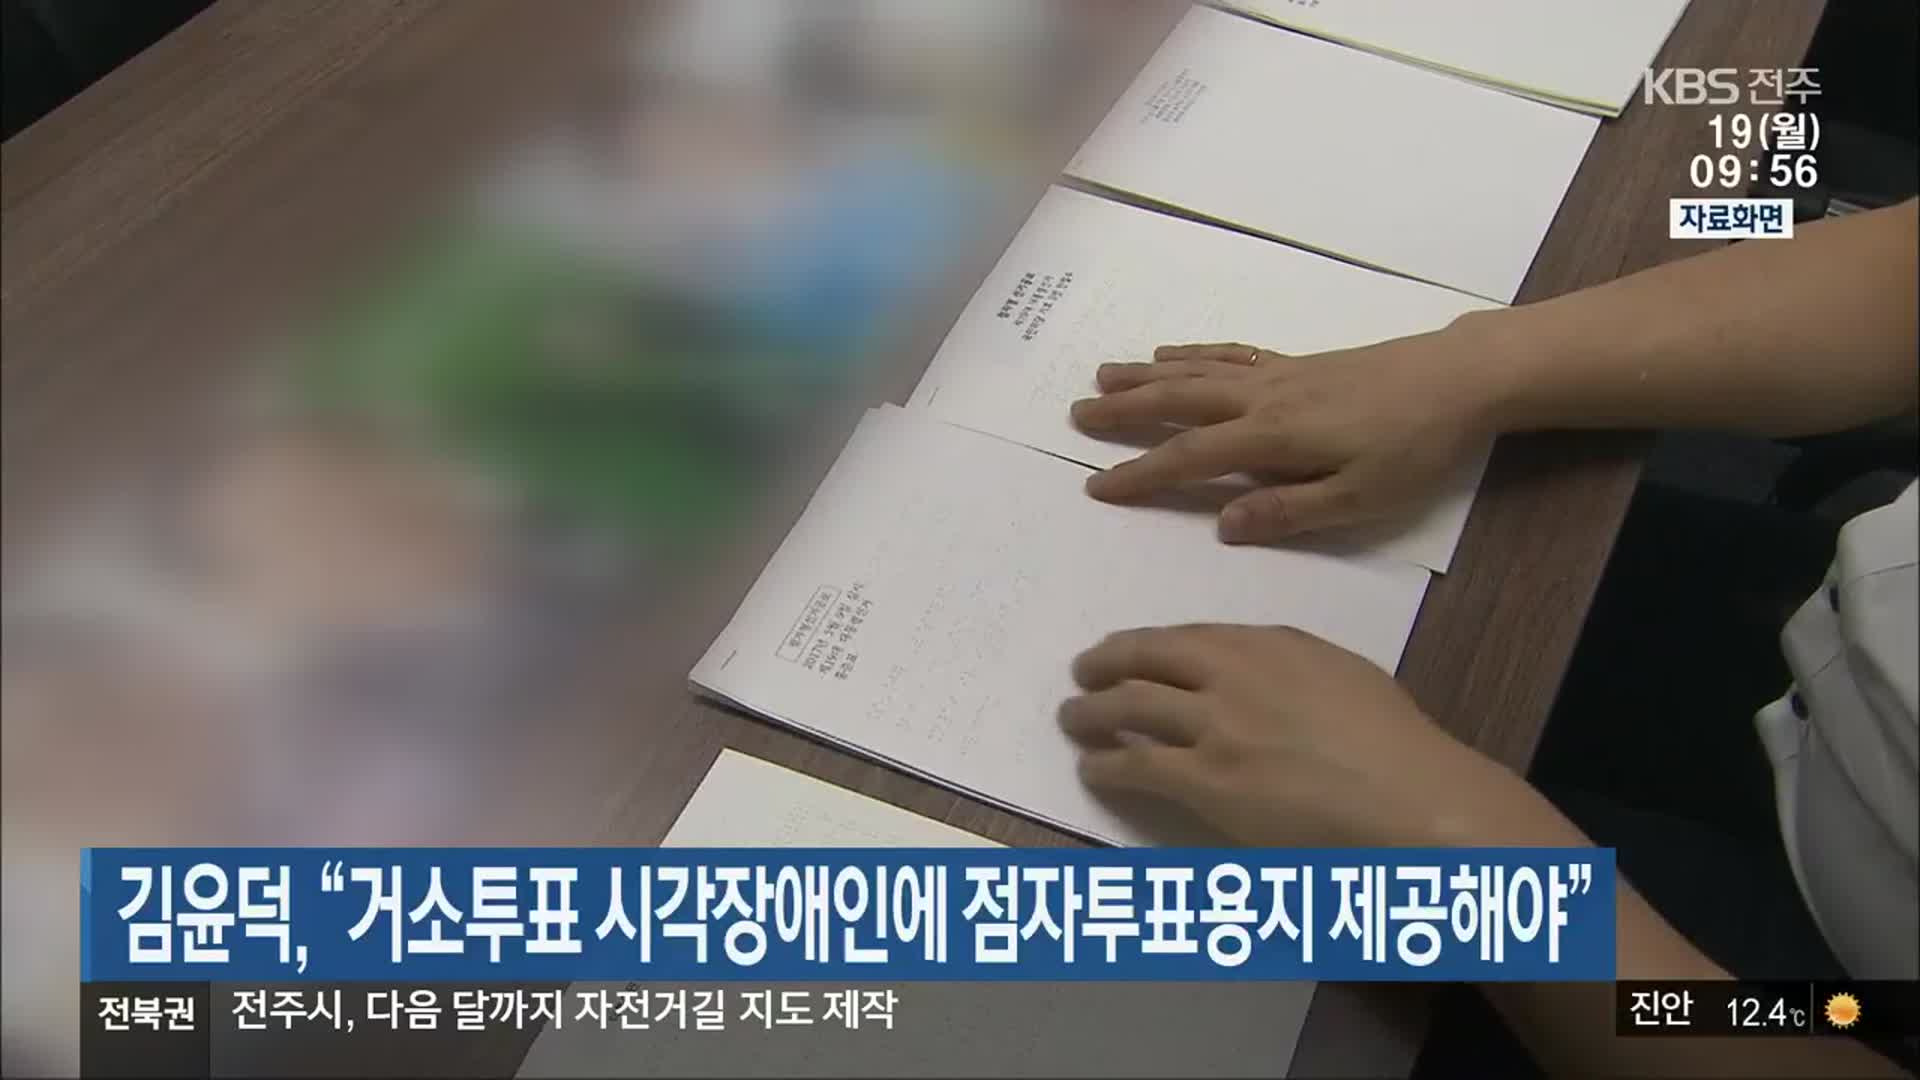 김윤덕, “거소투표 시각장애인에 점자투표용지 제공해야”